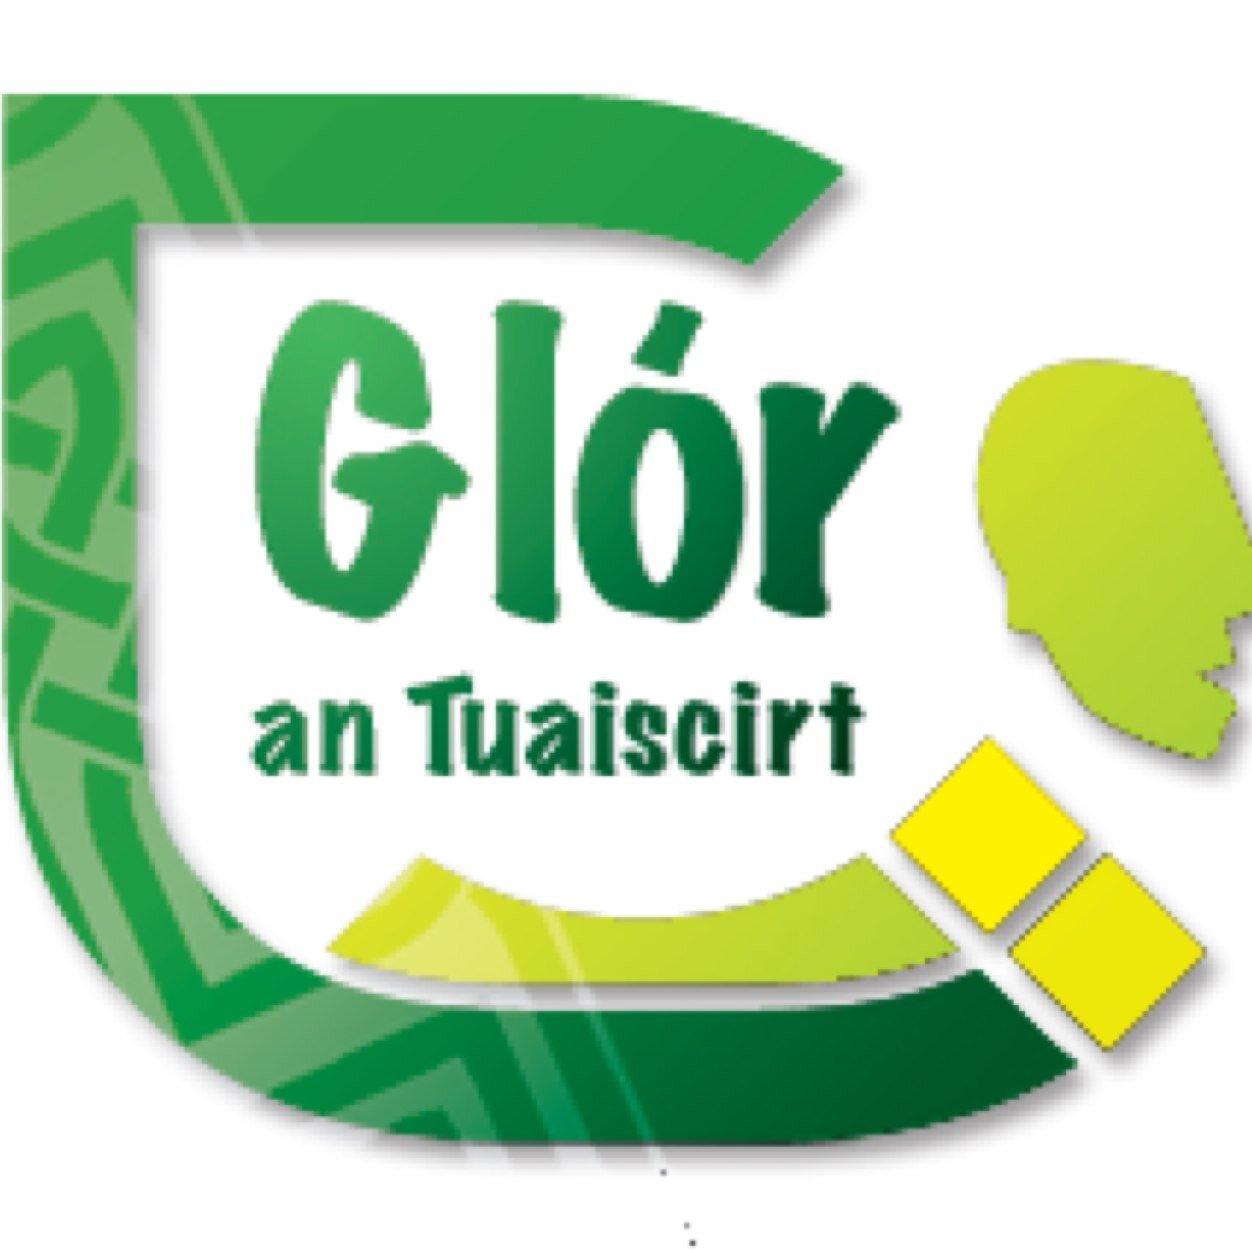 Is eagraíocht pobail Glór an Tuaiscirt a fheidhmníonn trí Ghaeilge in Ard Eoin. Glór an Tuaiscirt is an Irish language community group based in Ardoyne.